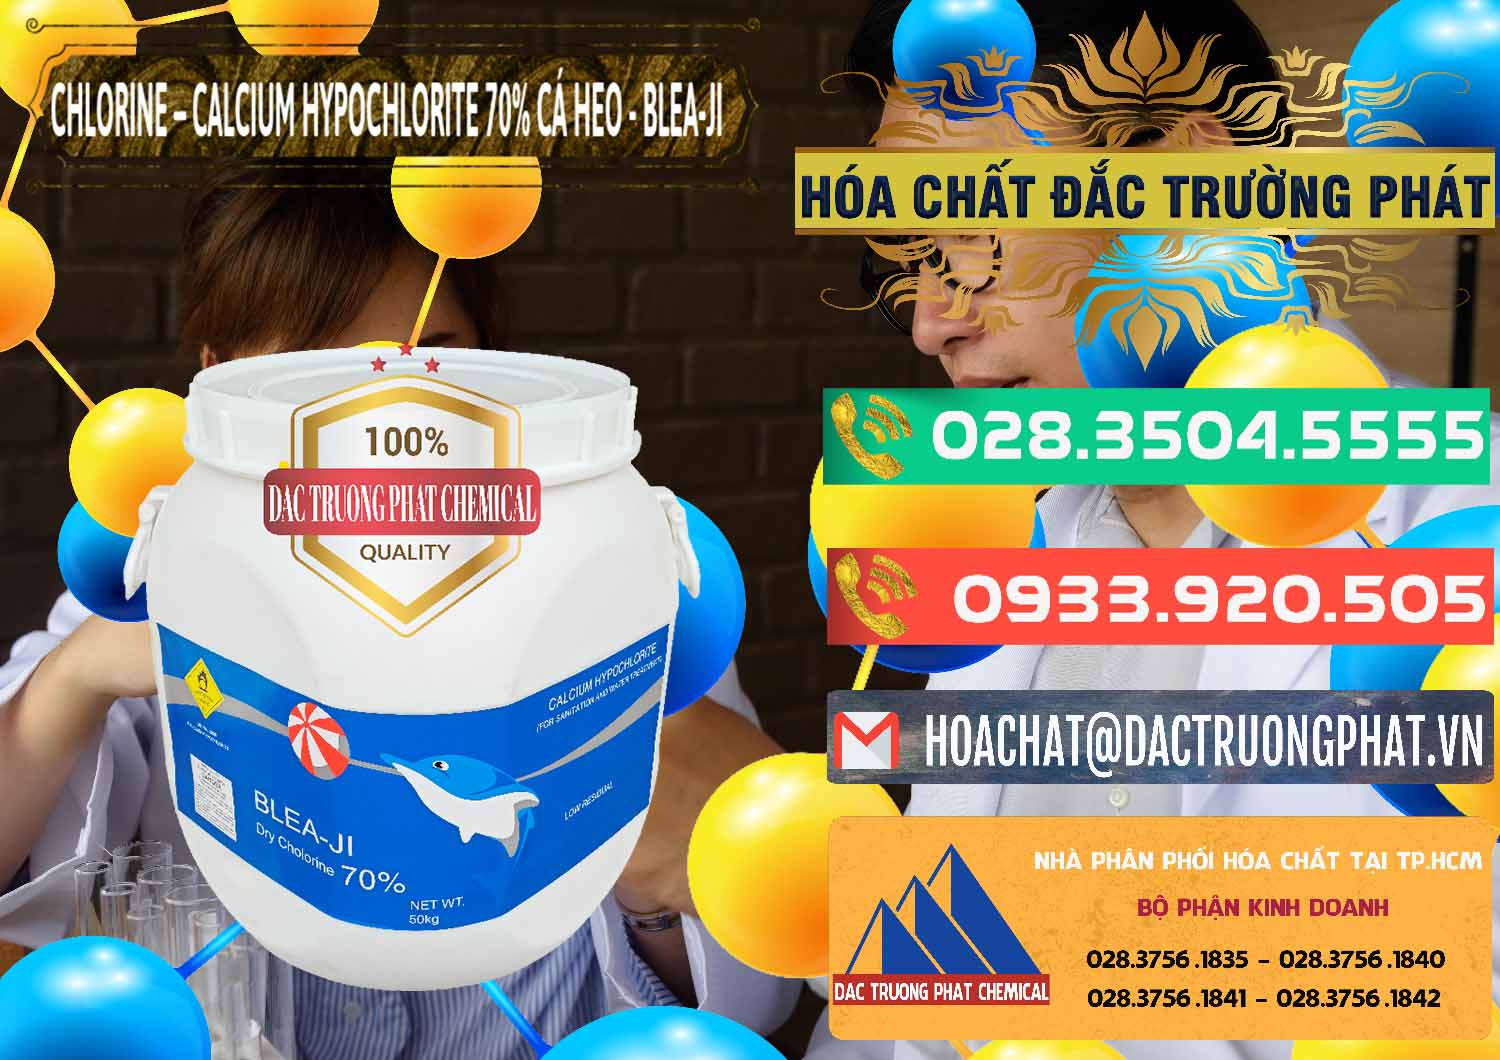 Cty bán và cung cấp Clorin - Chlorine Cá Heo 70% Blea-Ji Trung Quốc China - 0056 - Nhà phân phối & cung cấp hóa chất tại TP.HCM - congtyhoachat.com.vn